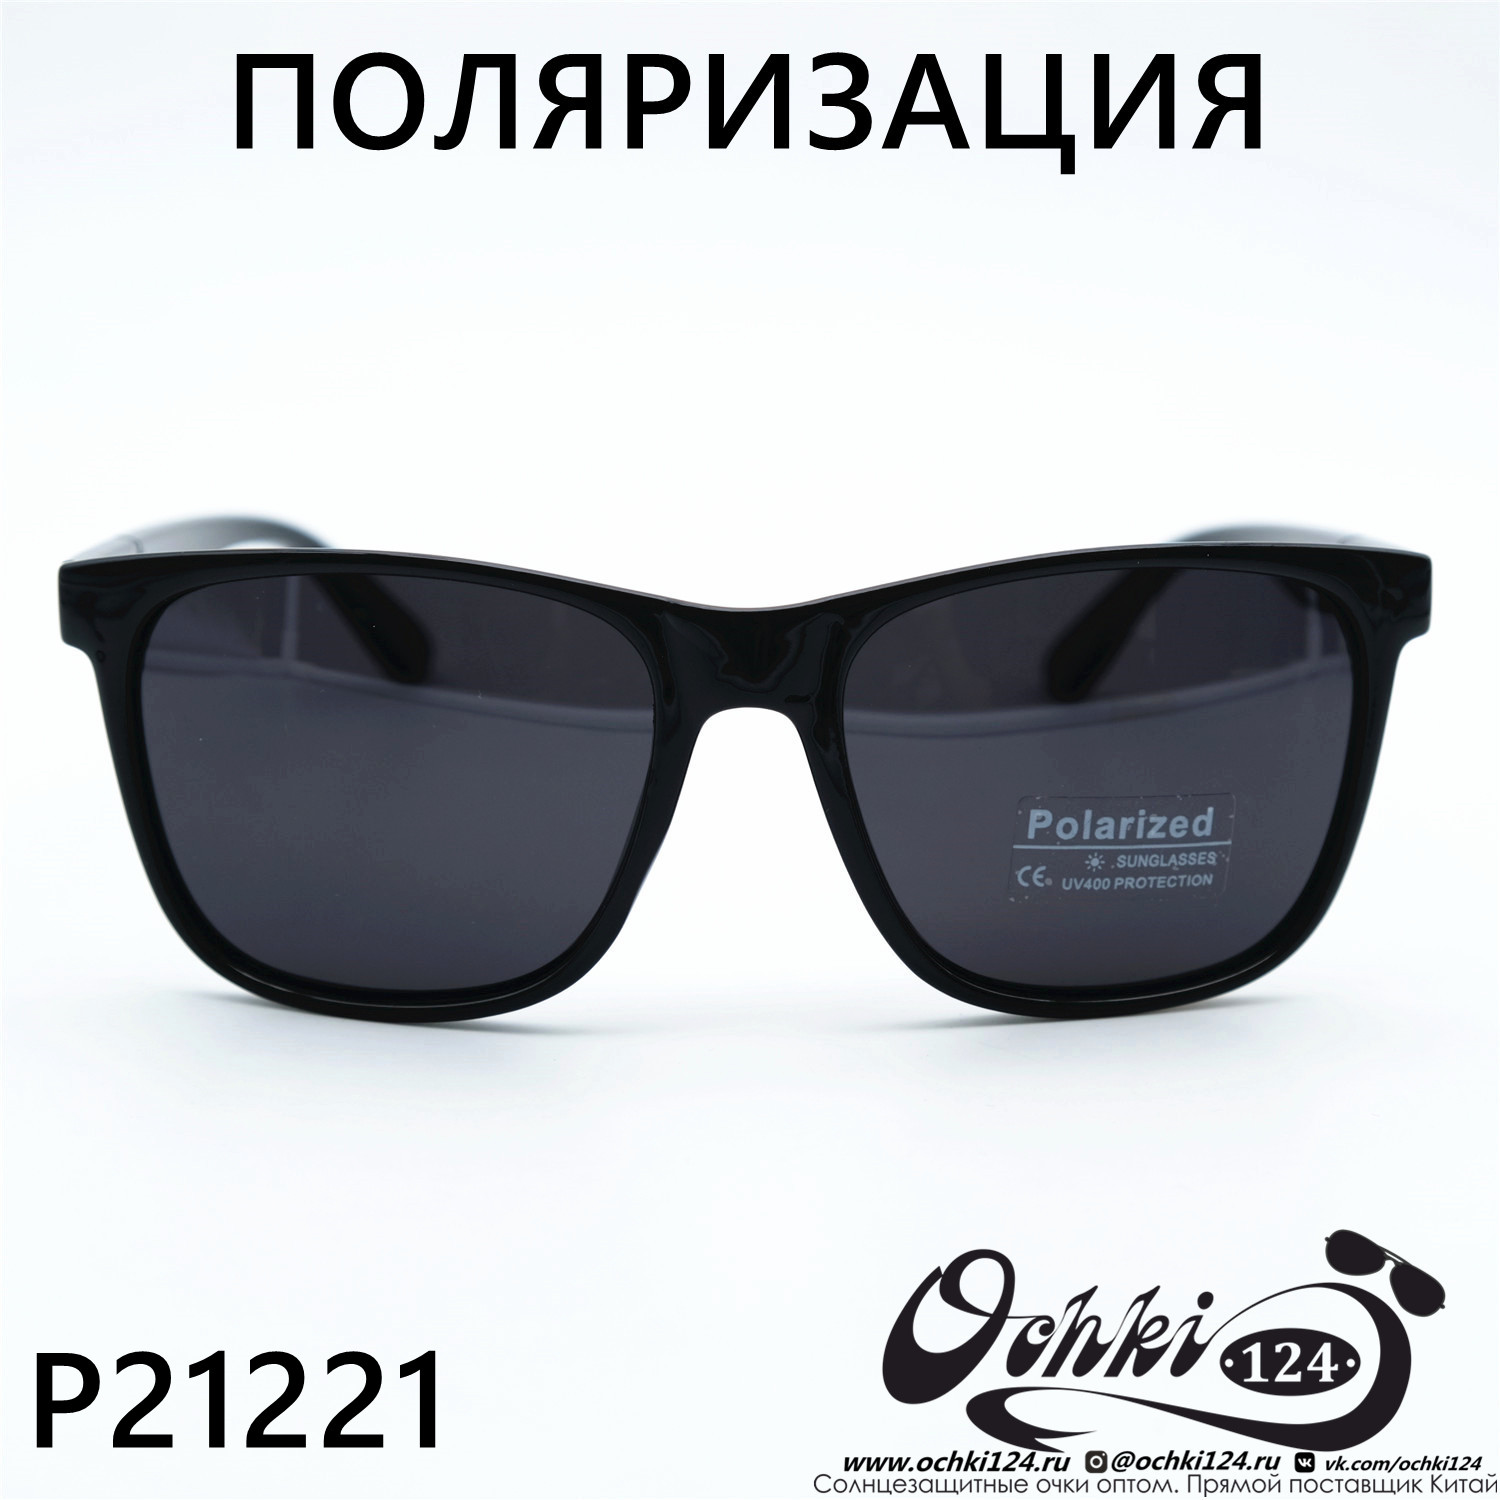  Солнцезащитные очки картинка 2023 Мужские Стандартные Polarized P21221-C1 